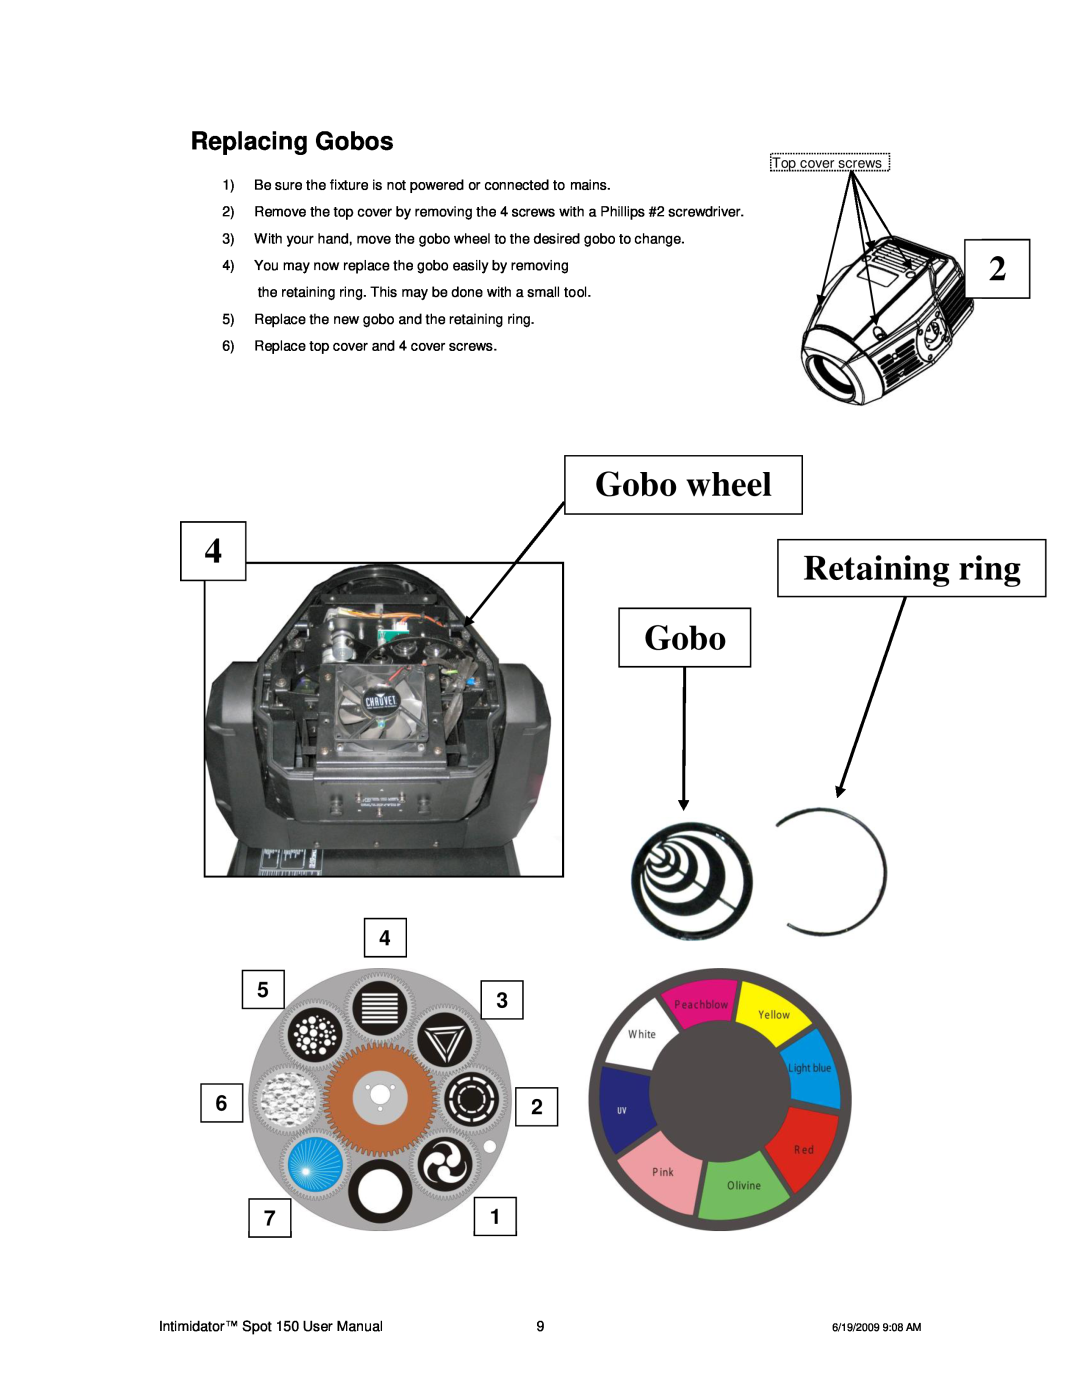 Chauvet 150 user manual Replacing Gobos, Gobo wheel Retaining ring Gobo 